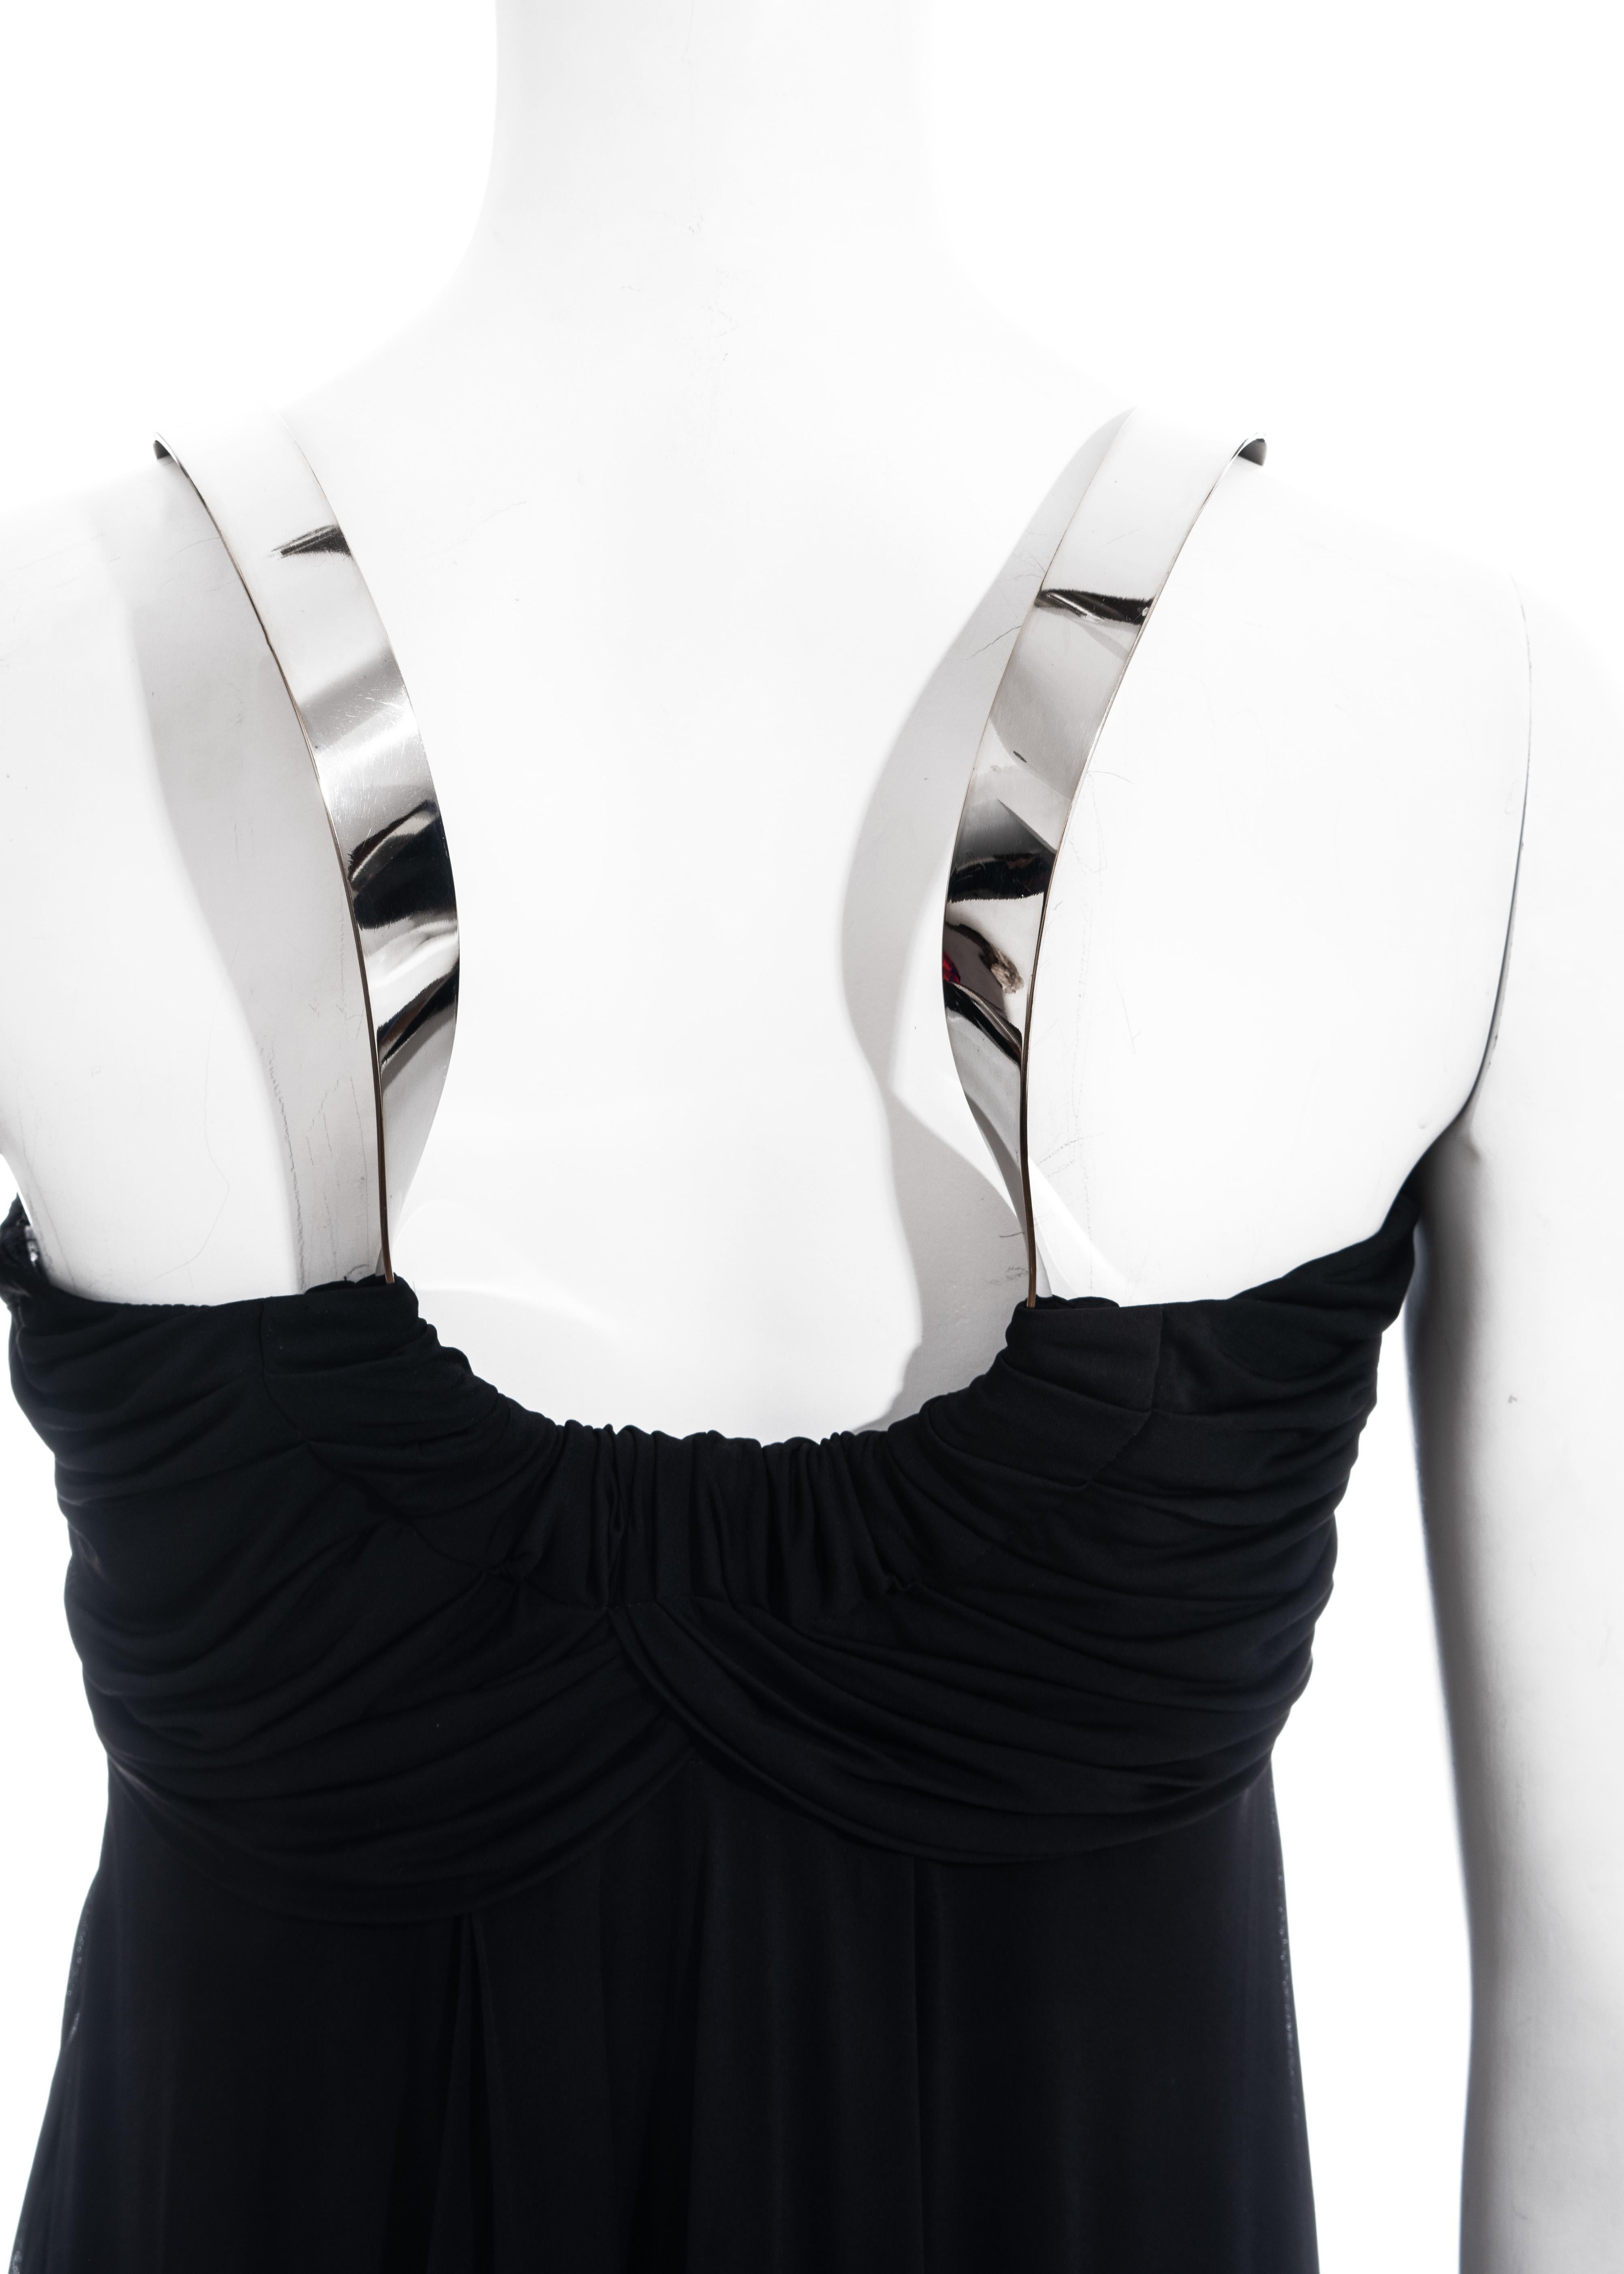 Celine black viscose a-line dress with metal halter-neck, ss 2008 For Sale 1